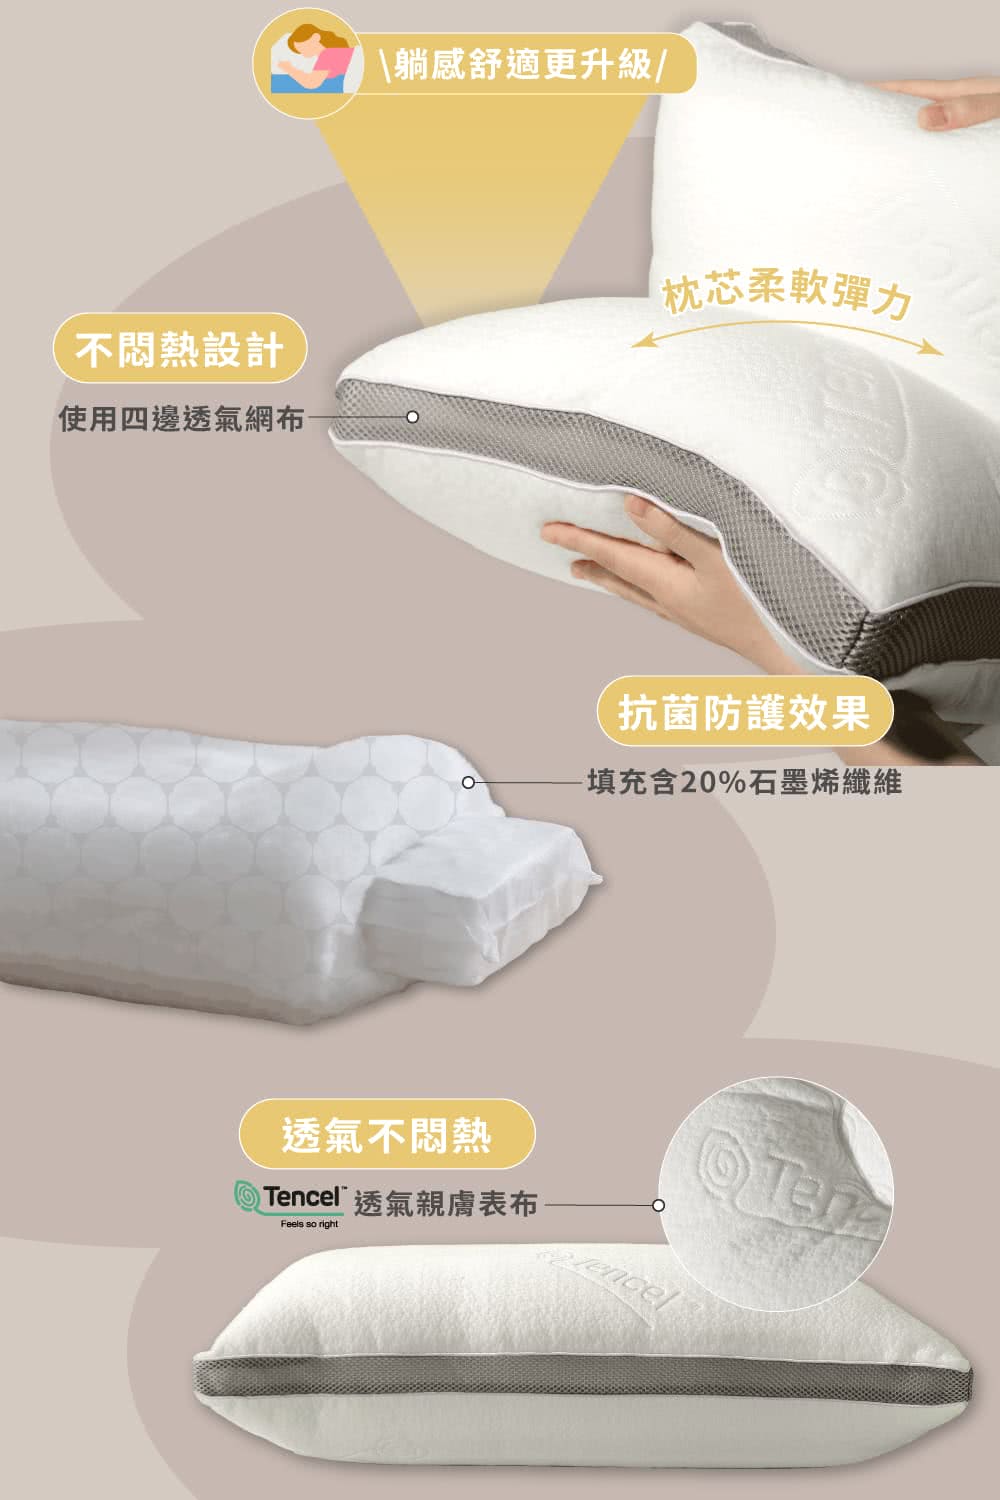 飛航模飾 石墨烯可水洗獨立筒枕(50顆鍍鋅彈簧)優惠推薦